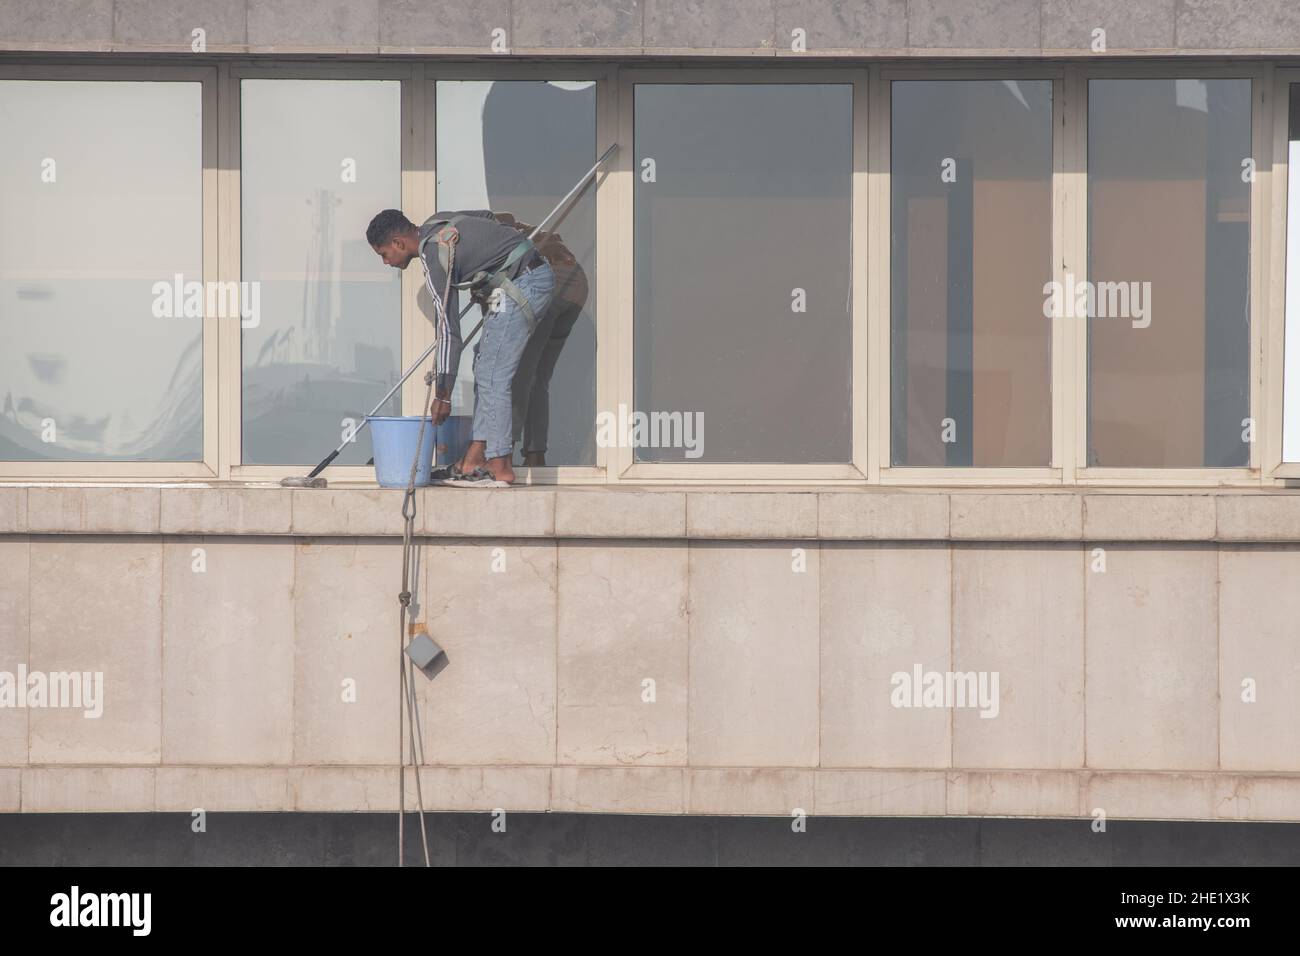 Un lave-glace au Caire, en Égypte travaille à nettoyer le verre d'un bâtiment de plusieurs étages.Travail dangereux avec un minimum d'équipement de sécurité. Banque D'Images